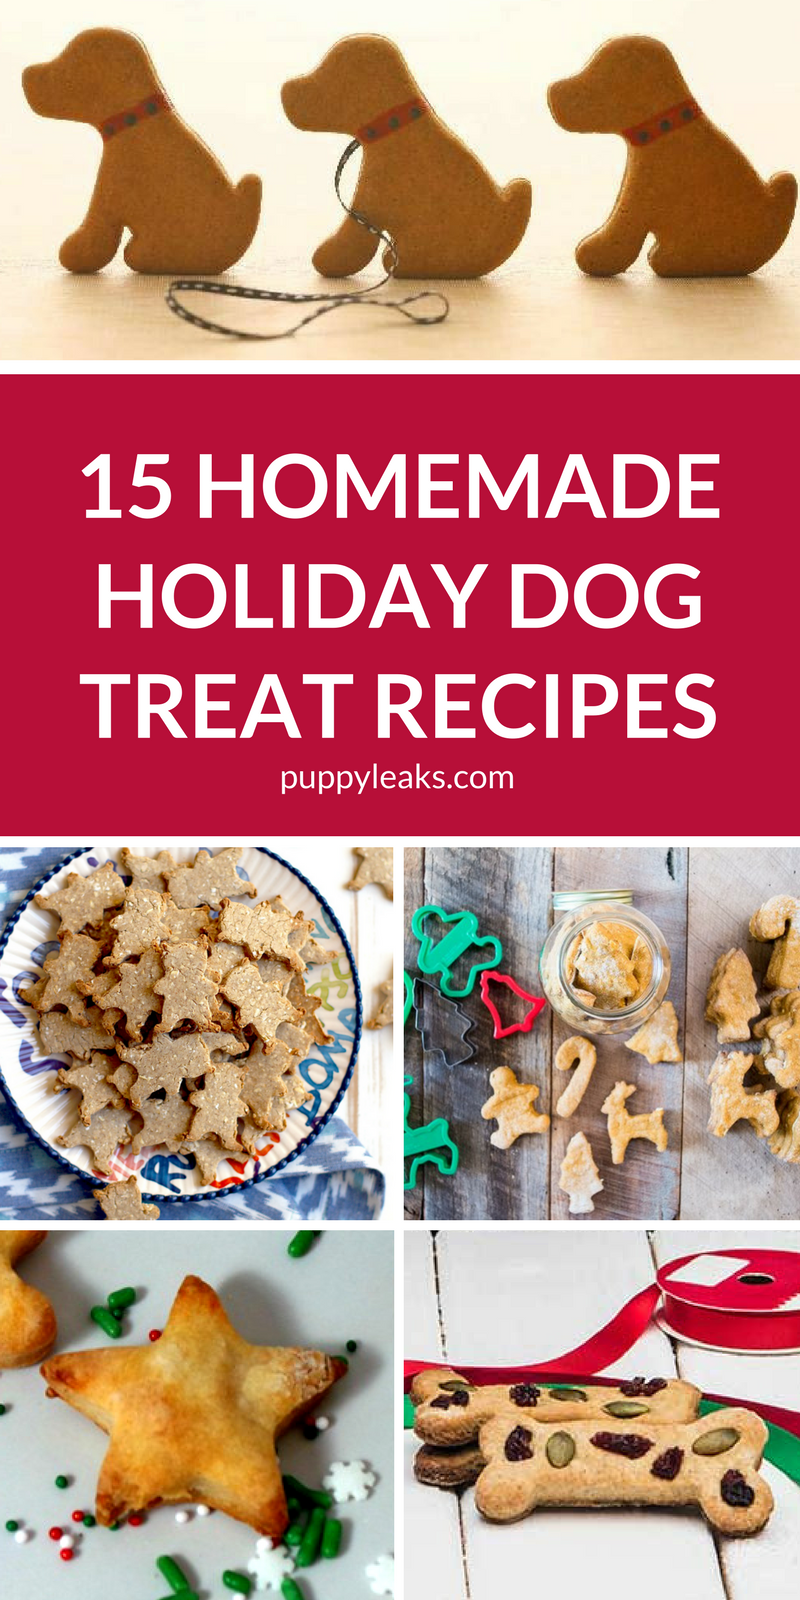 15 zelfgemaakte recepten voor hondensnoepjes voor de feestdagen